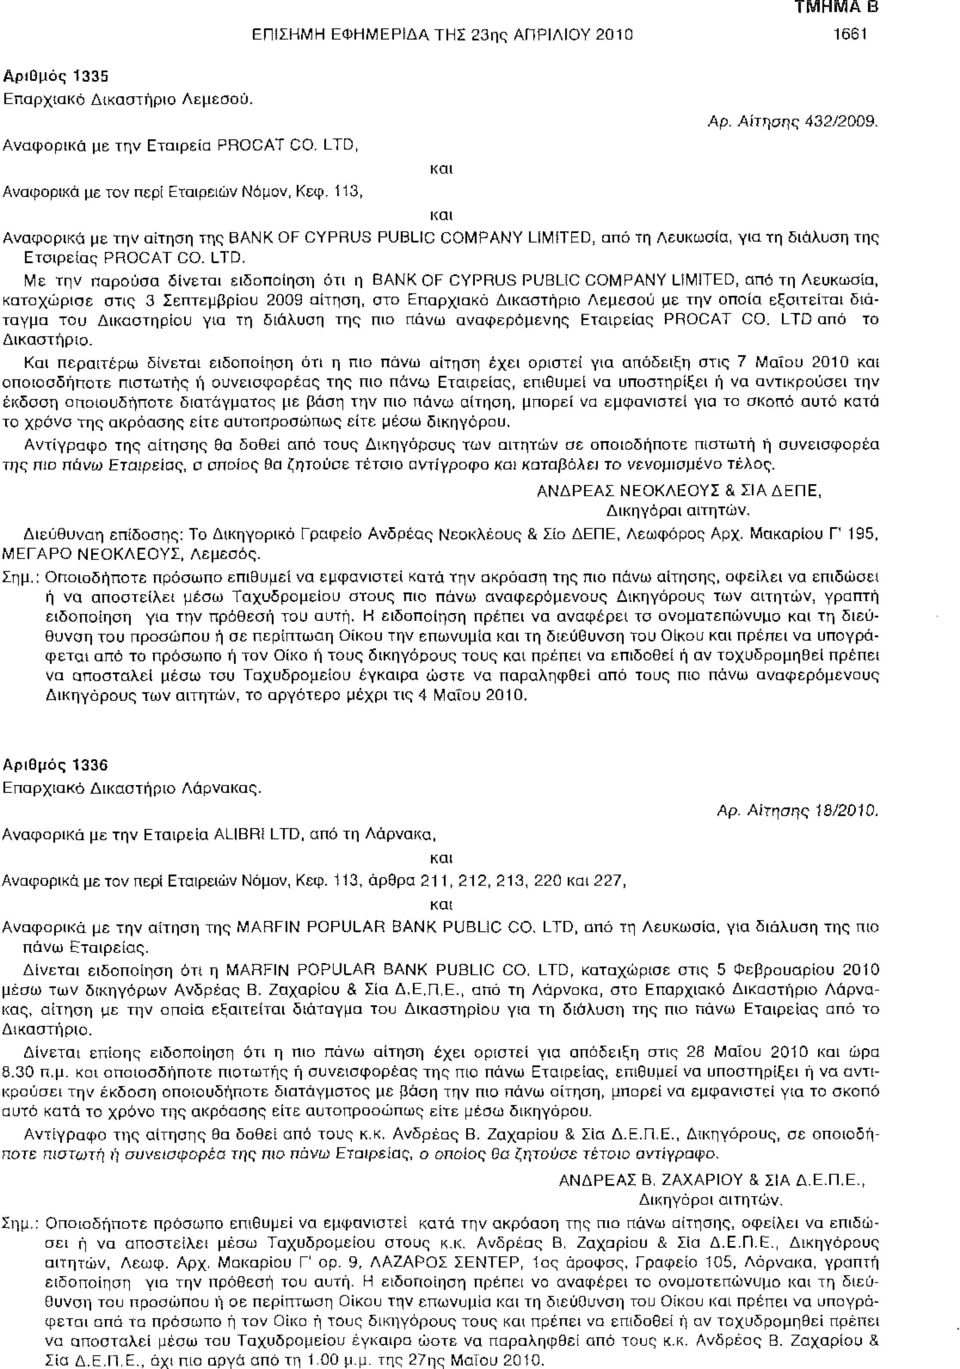 LTD, Με την παρούσα δίνεται ειδοποίηση ότι η BANK OF CYPRUS PUBLiC COMPANY LIMITED, από τη Λευκωσία, καταχώρισε στις 3 Σεπτεμβρίου 2009 αίτηση, στο Επαρχιακό Δικαστήριο Λεμεσού με την οποία